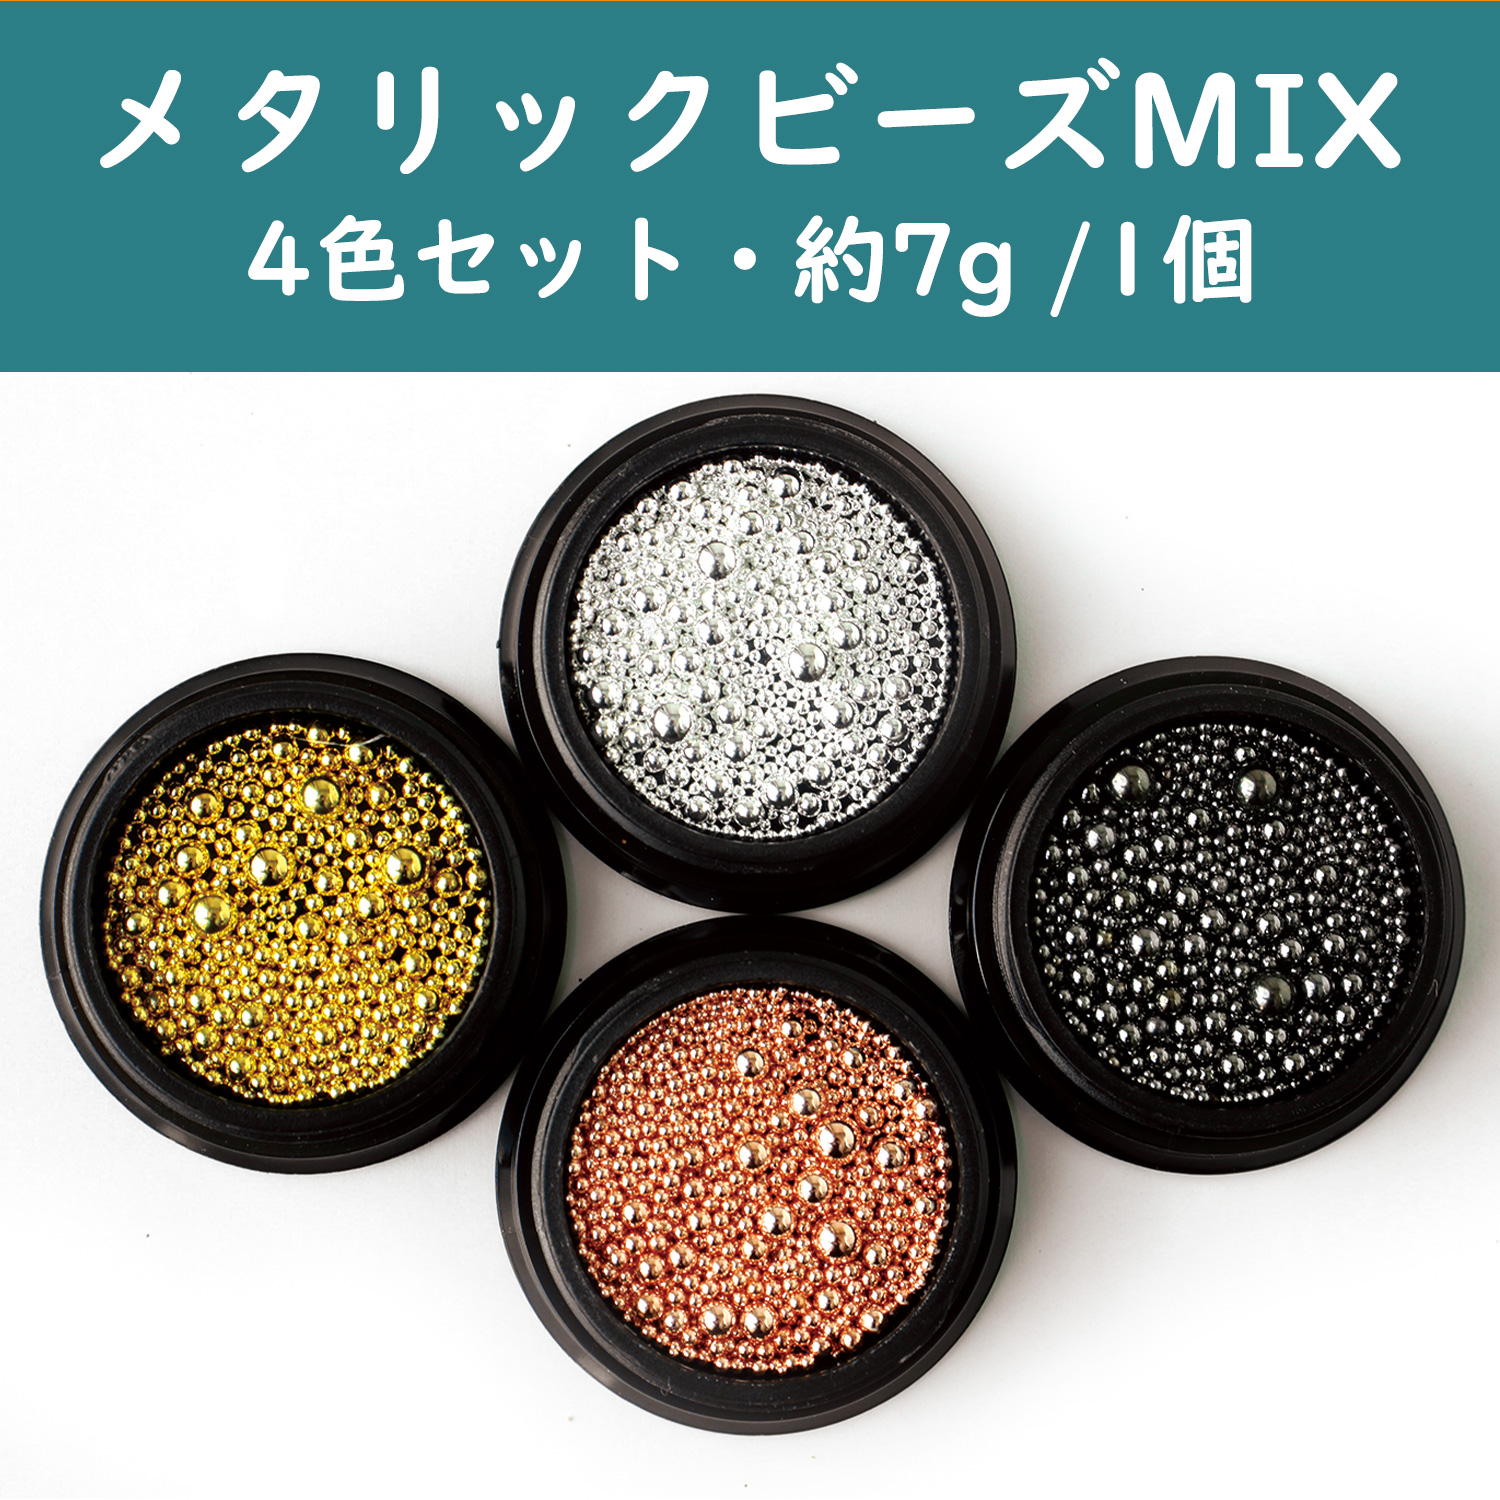 T10-O Metallic Beads MIX 4 Colors Set Approx. 7g/1 piece (Set)